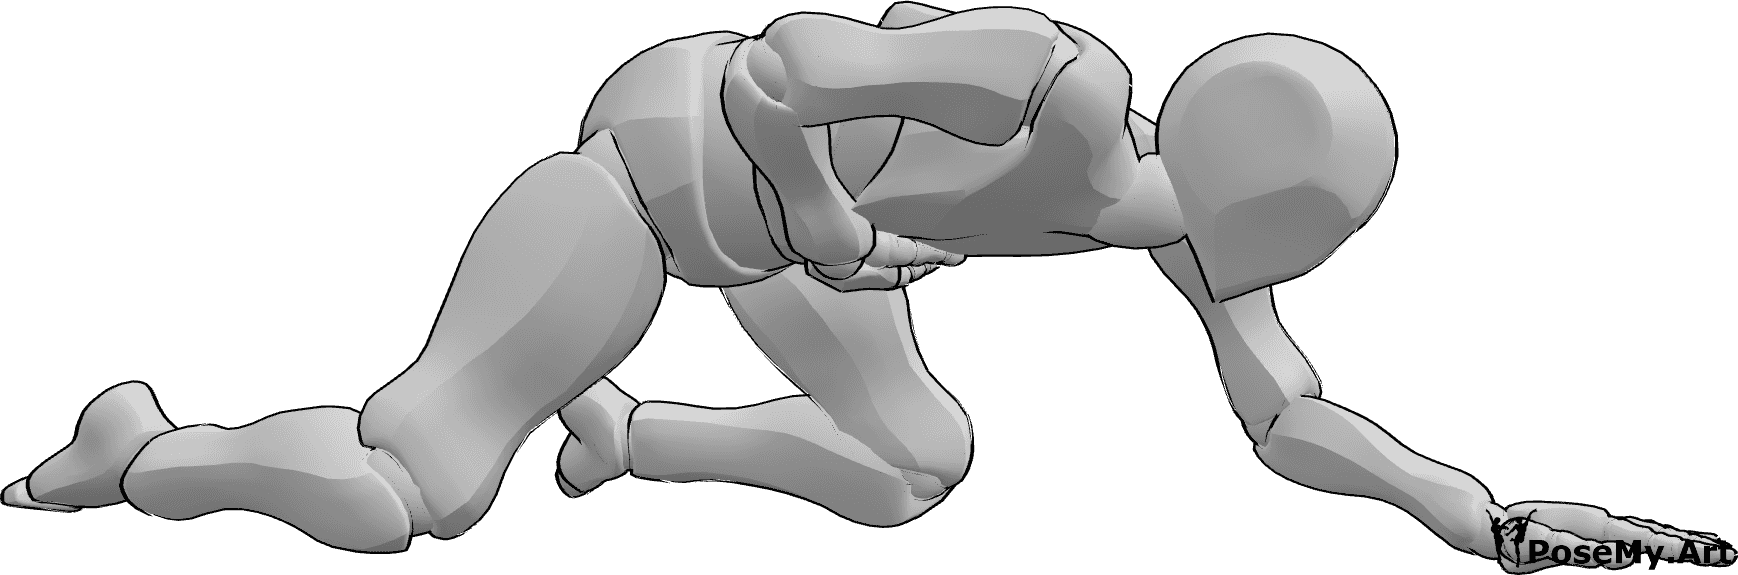 Referencia de poses- Postura de gateo lesionado - El varón herido se sujeta el estómago y se arrastra de rodillas